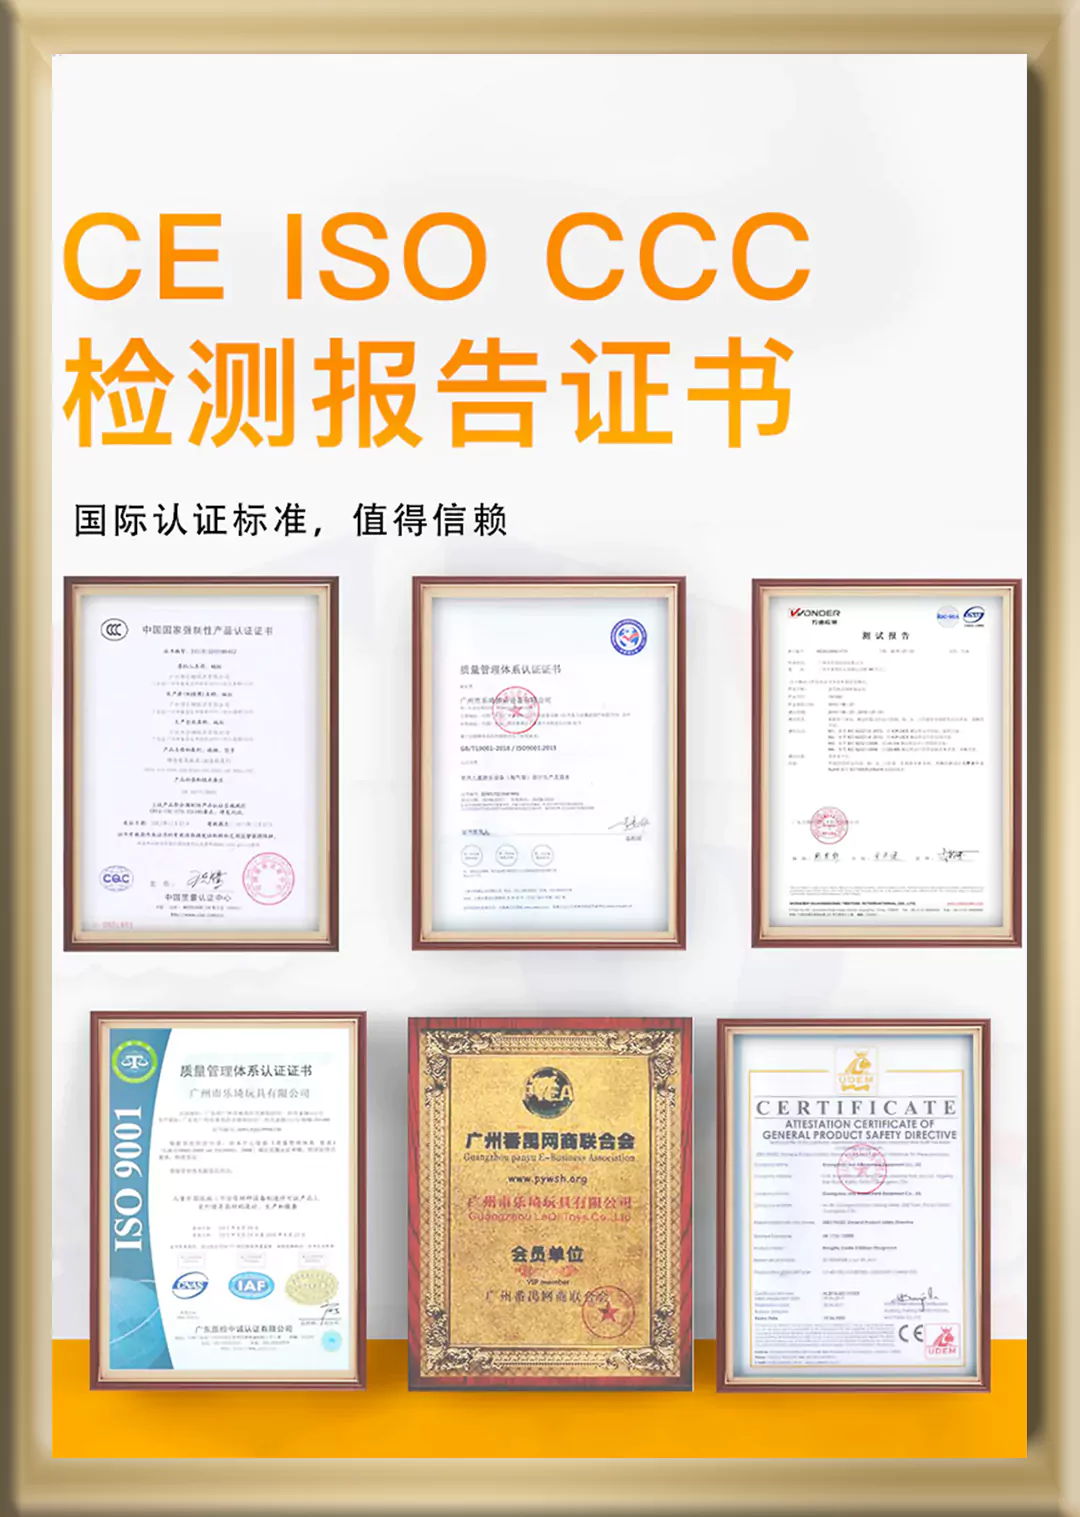 5-Certificate-1